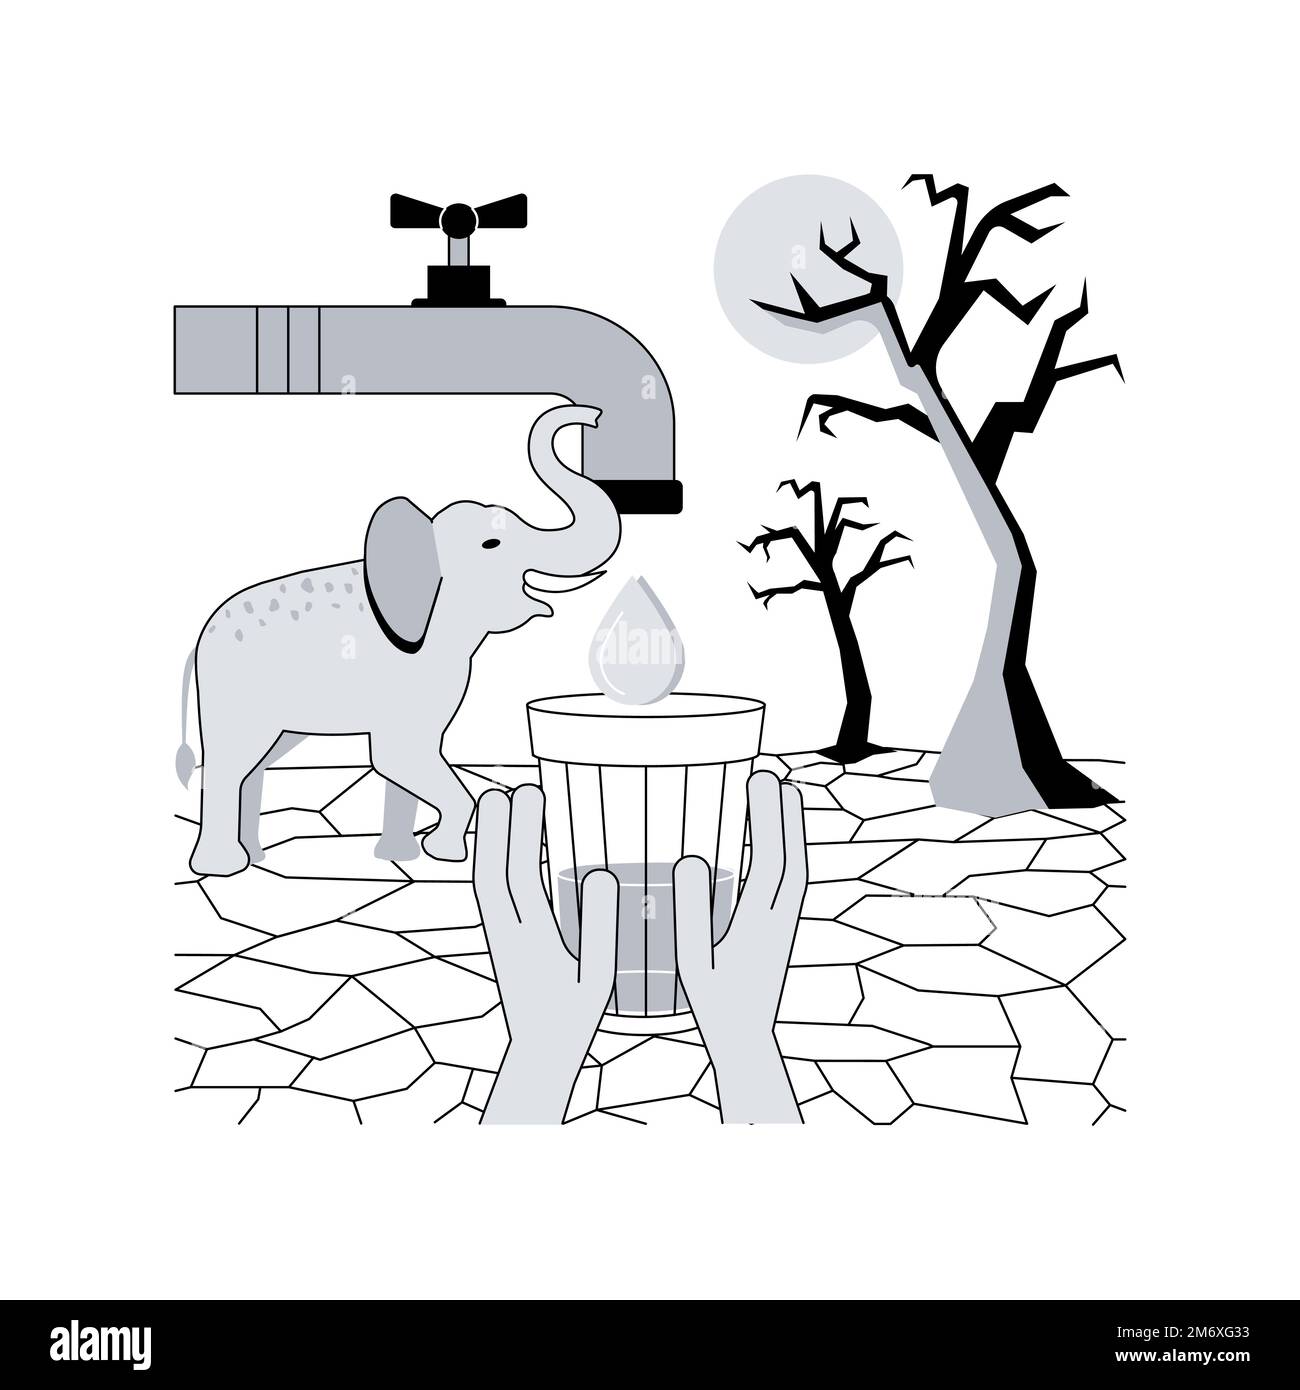 Absence d'illustration abstraite de vecteur de concept d'eau douce. Contamination de l'eau potable, manque de services d'assainissement, sécheresse, pénurie d'eau douce, Illustration de Vecteur